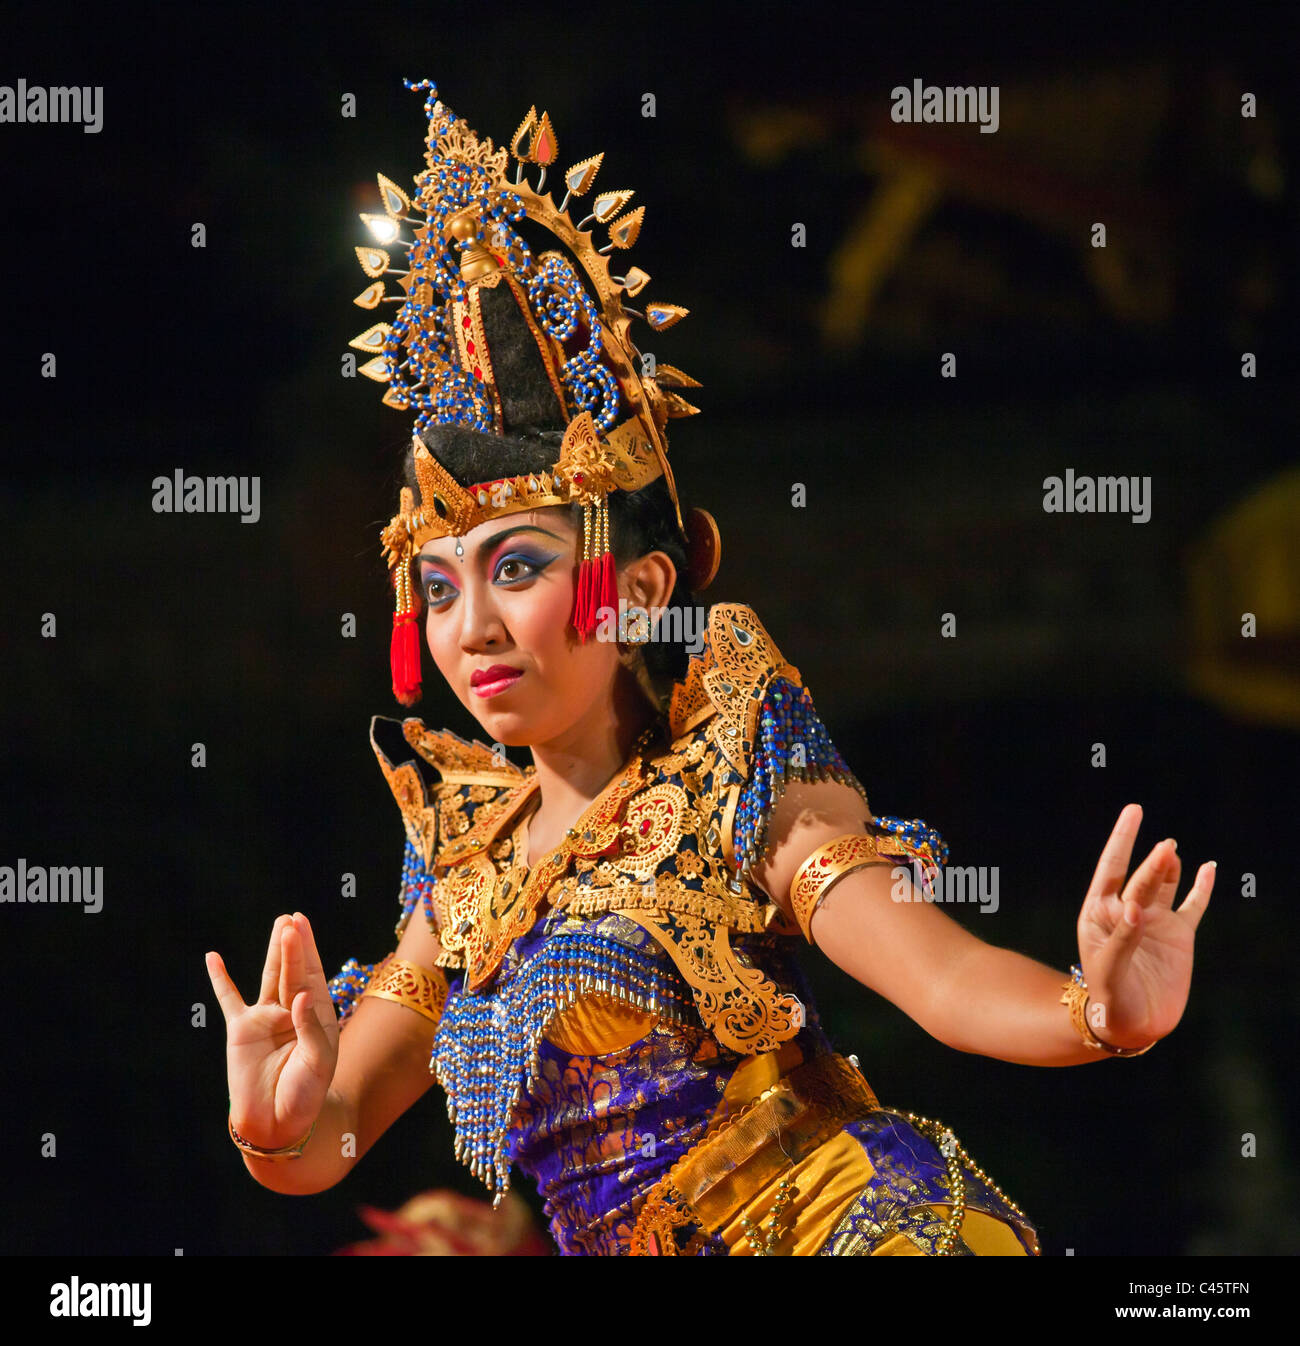 Le DUDUK KEBYAR DANSE est effectuée par le groupe de danse de Gamelan Wayah Cenik à Pura Taman SARASWATI - UBUD, BALI, INDONÉSIE Banque D'Images